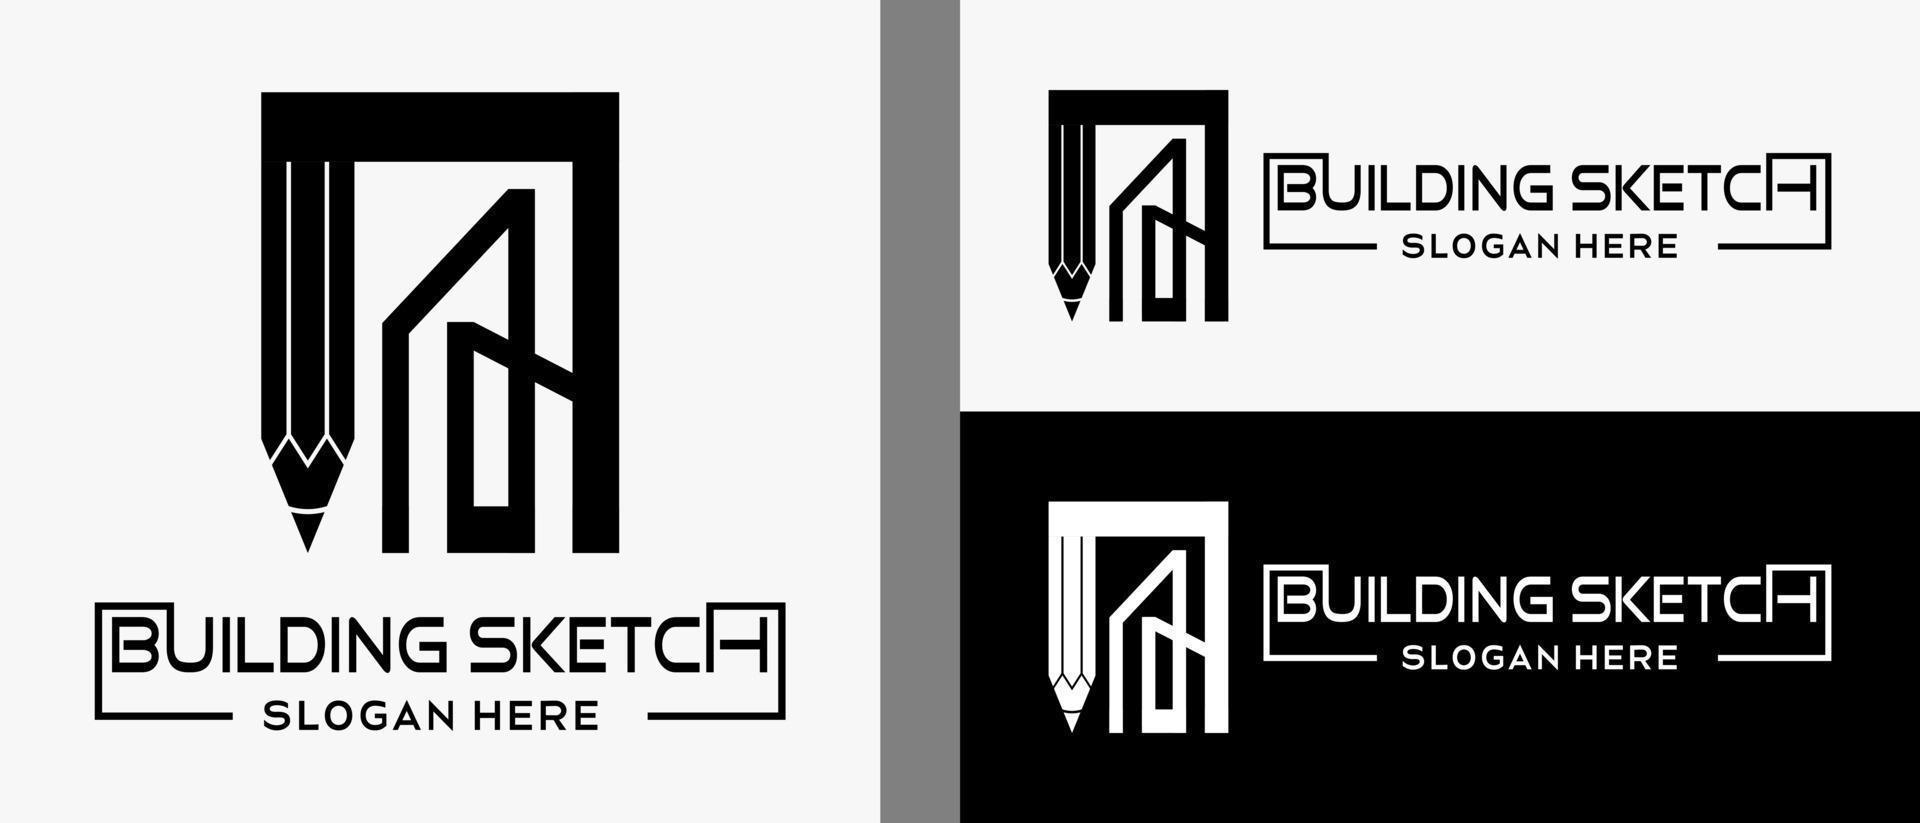 Bleistift-Logo-Design-Vorlage mit Gebäude in Schwarz-Weiß-Linie Kunstkonzept. Premium-Vektor-Gebäude oder Gebäudedesigner-Logo-Illustration vektor